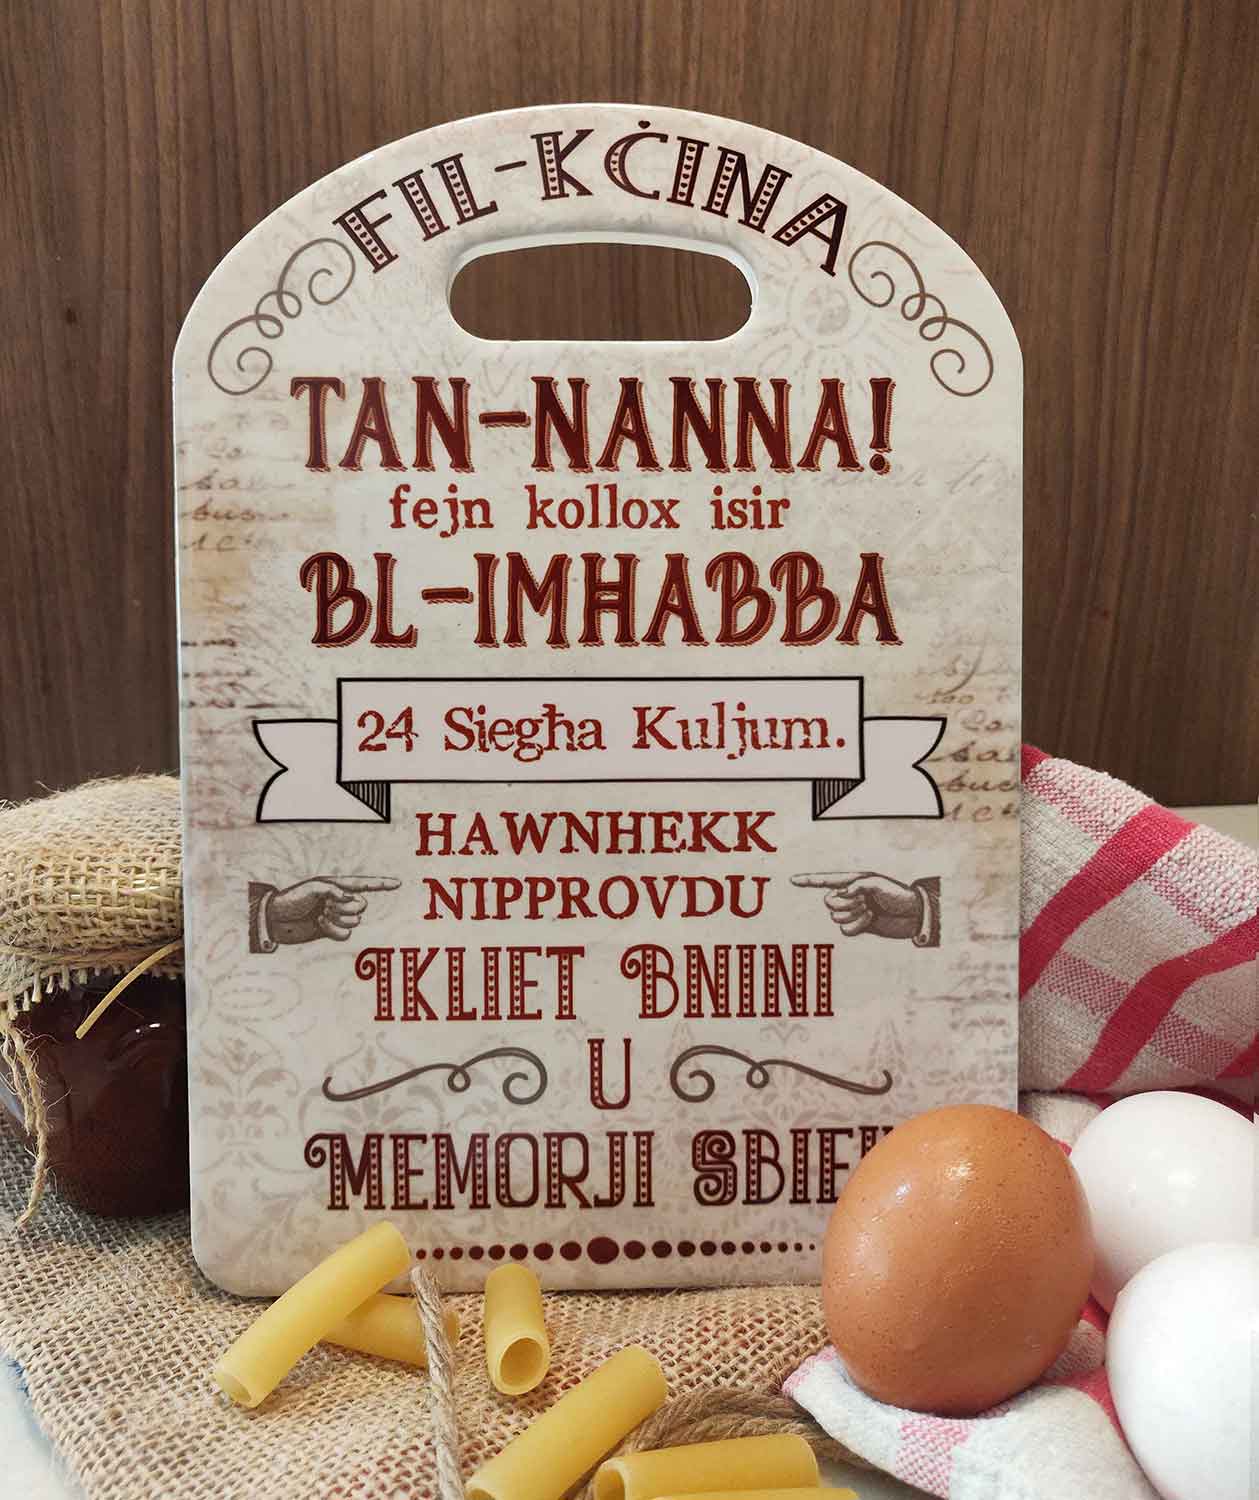 Chopping Board dekorattiva għan Nanna (Fejn kollox isir bl-imħabba)